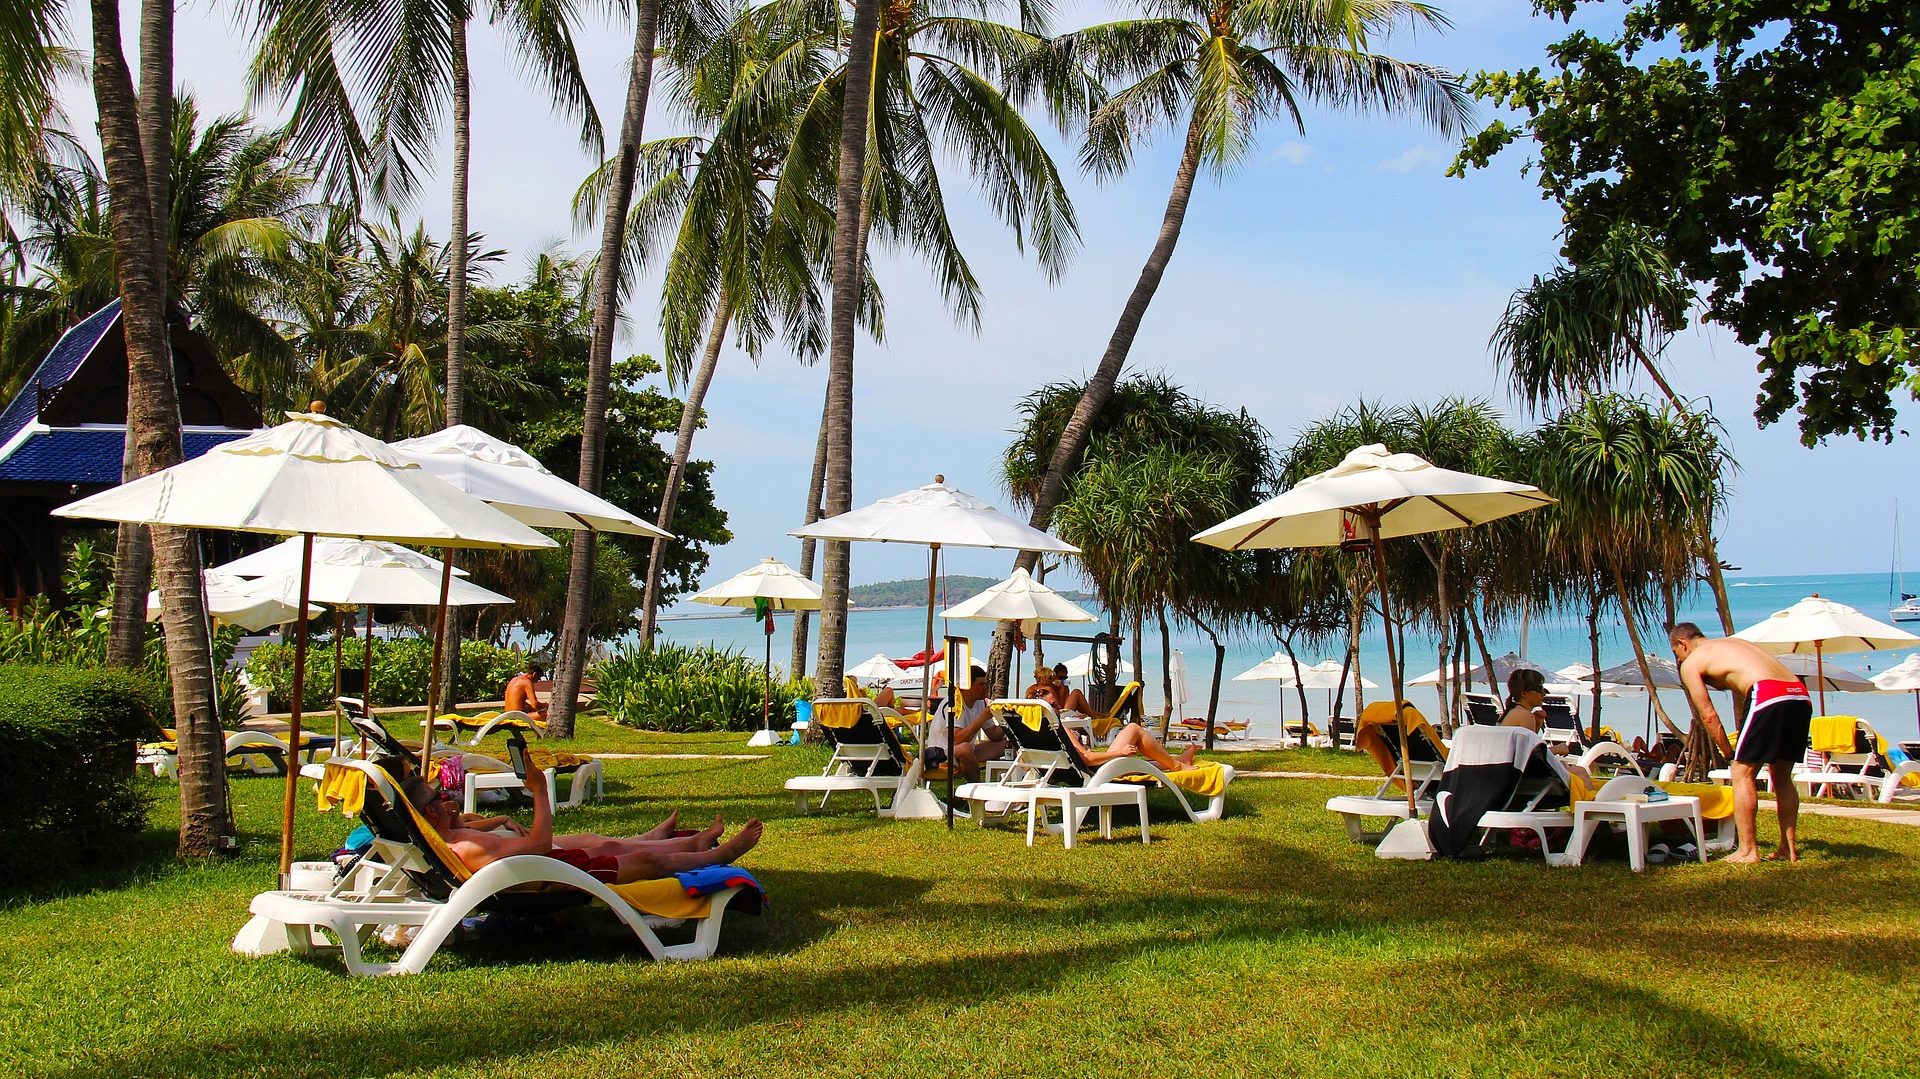 Que ver y hacer en Koh Samui. Ir de vacaciones a Koh Samui. Playas, hoteles, excursiones y actividades